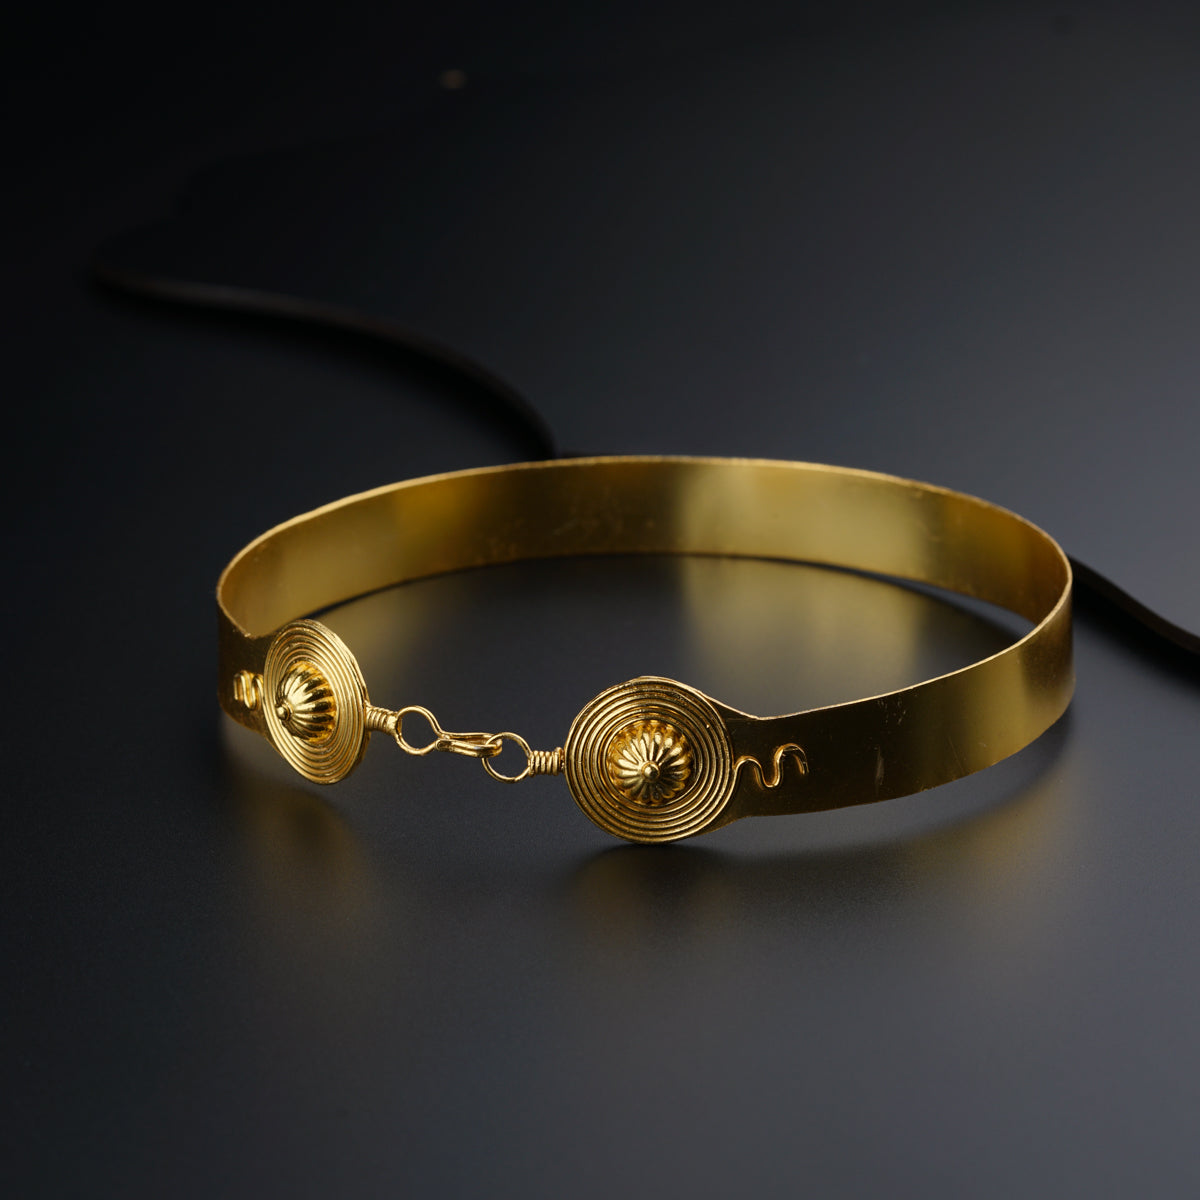 a close up of a gold bracelet on a black surface